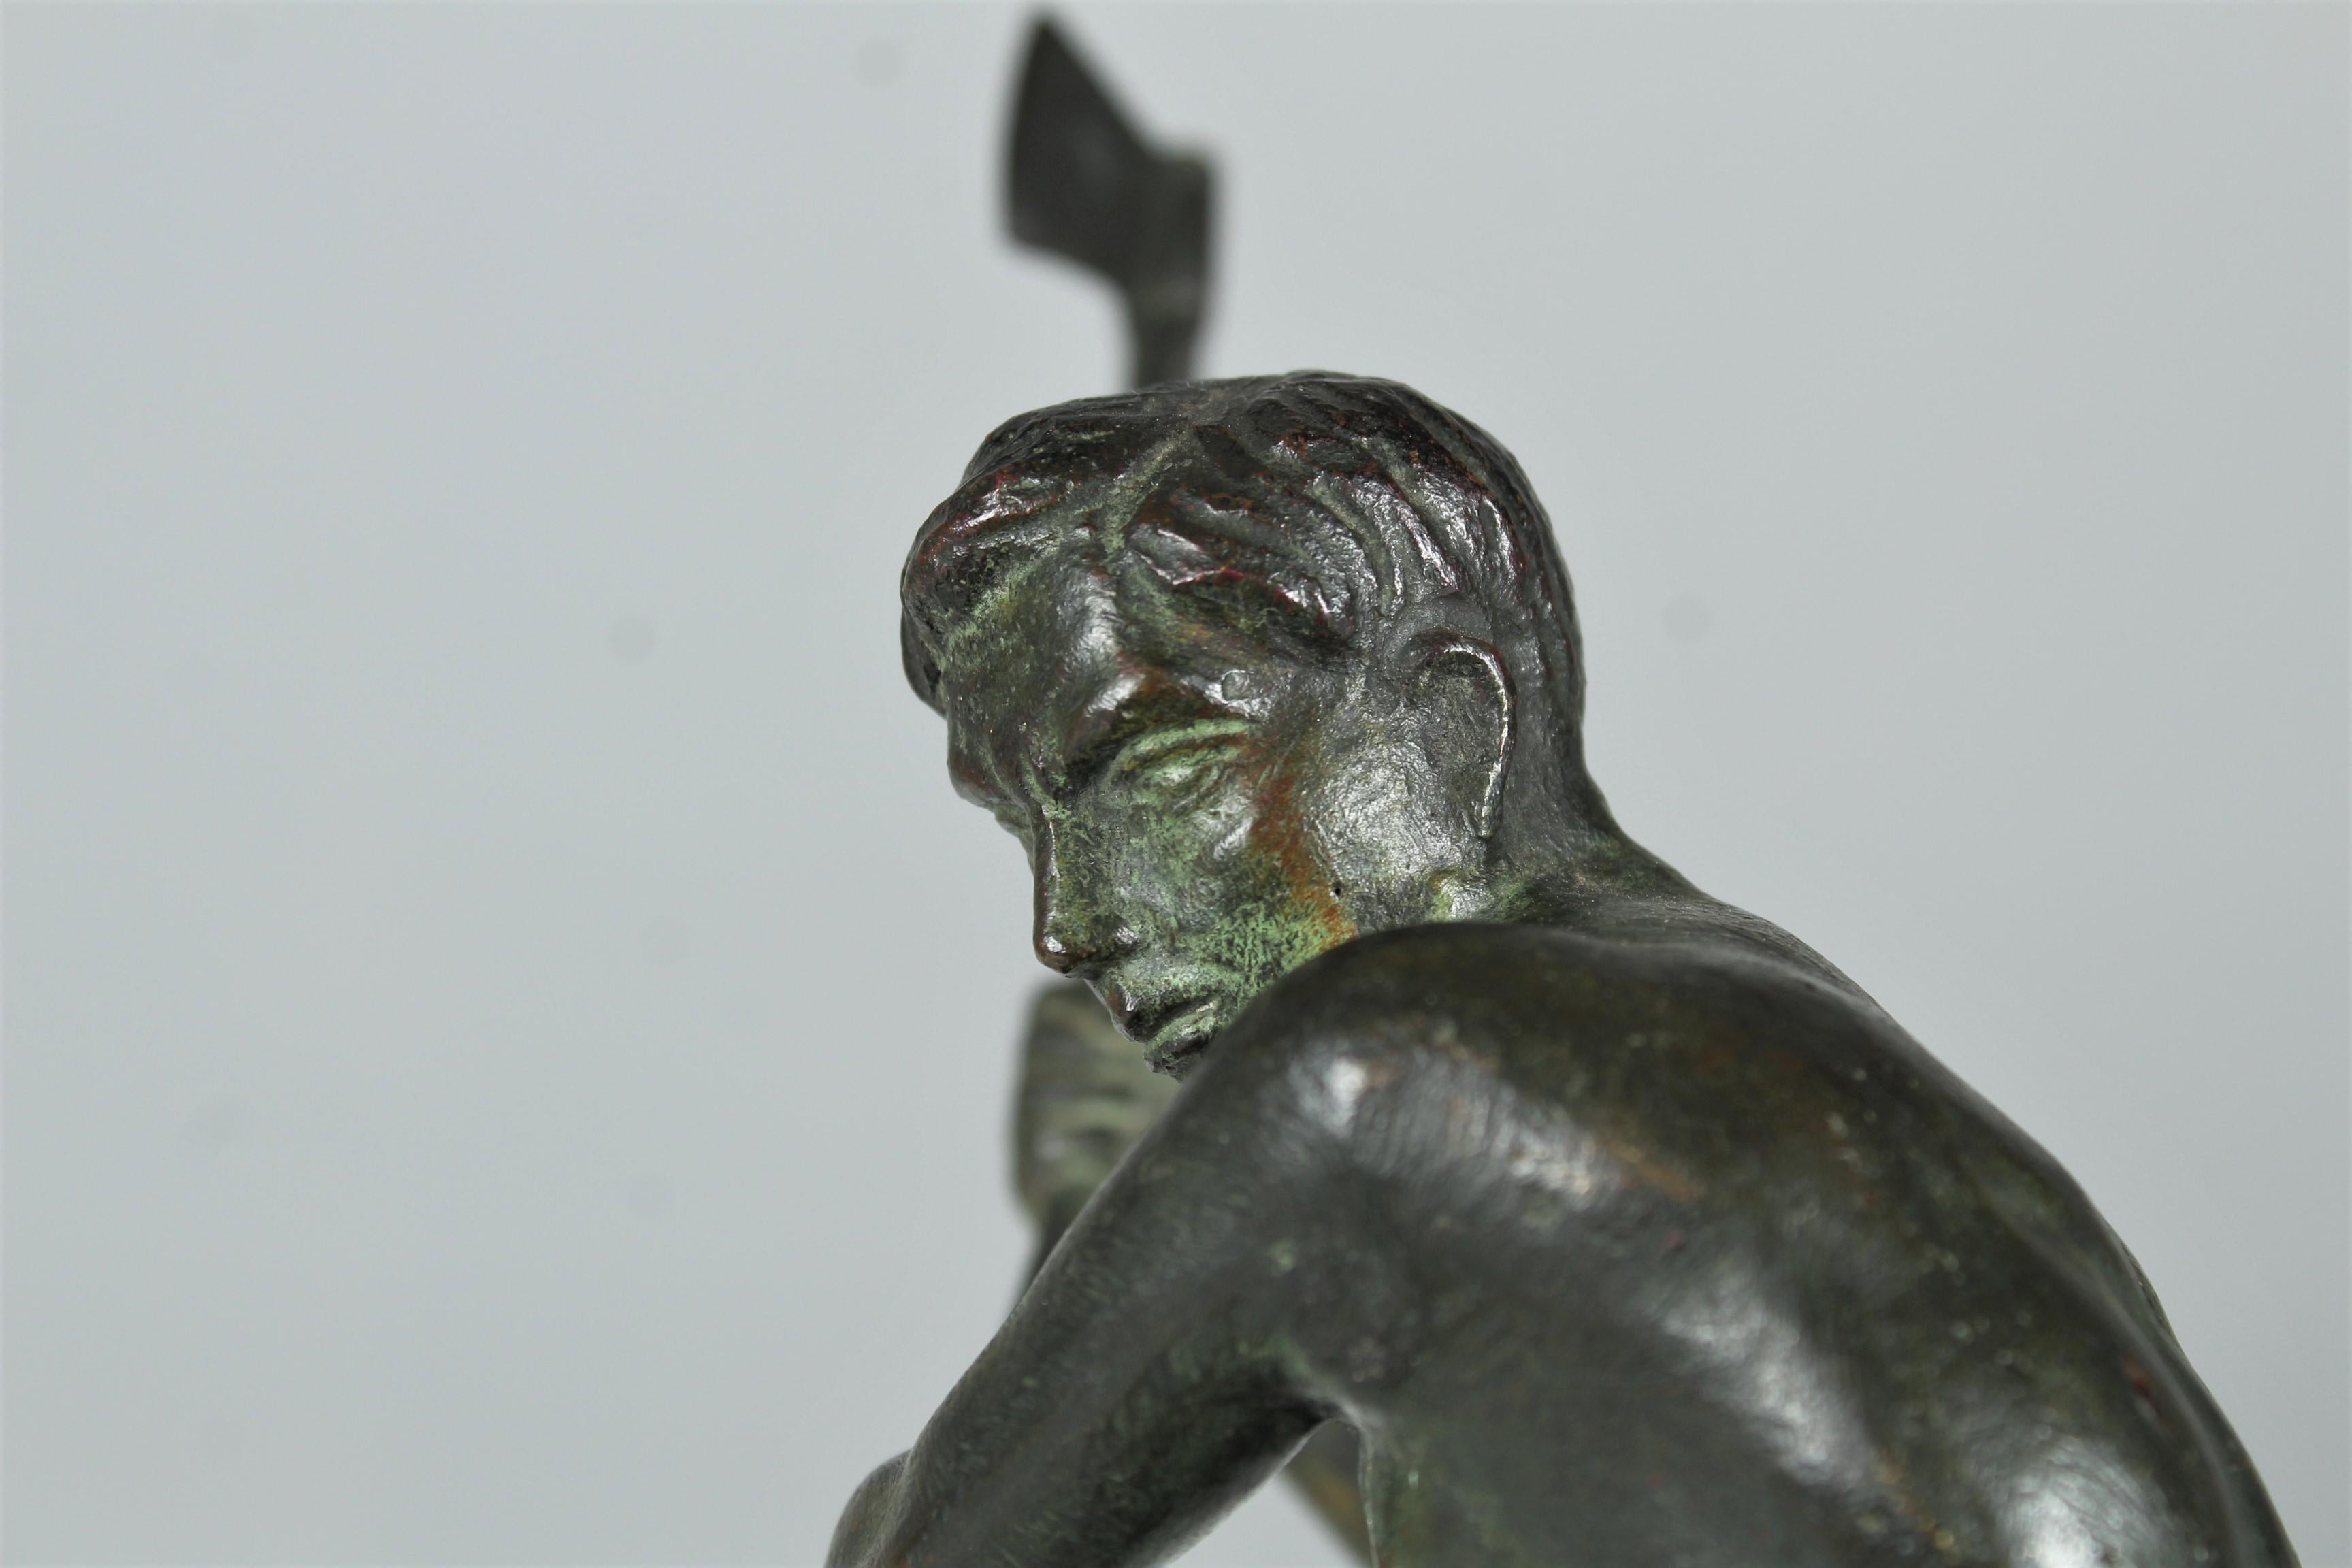 La sculpture en bronze représente un bûcheron au travail, qui sort sa hache pour donner un coup. Le bronze présente de très beaux détails et une patine d'origine.  La sculpture est en bronze massif et est très lourde. 
Signé par l'artiste sur le